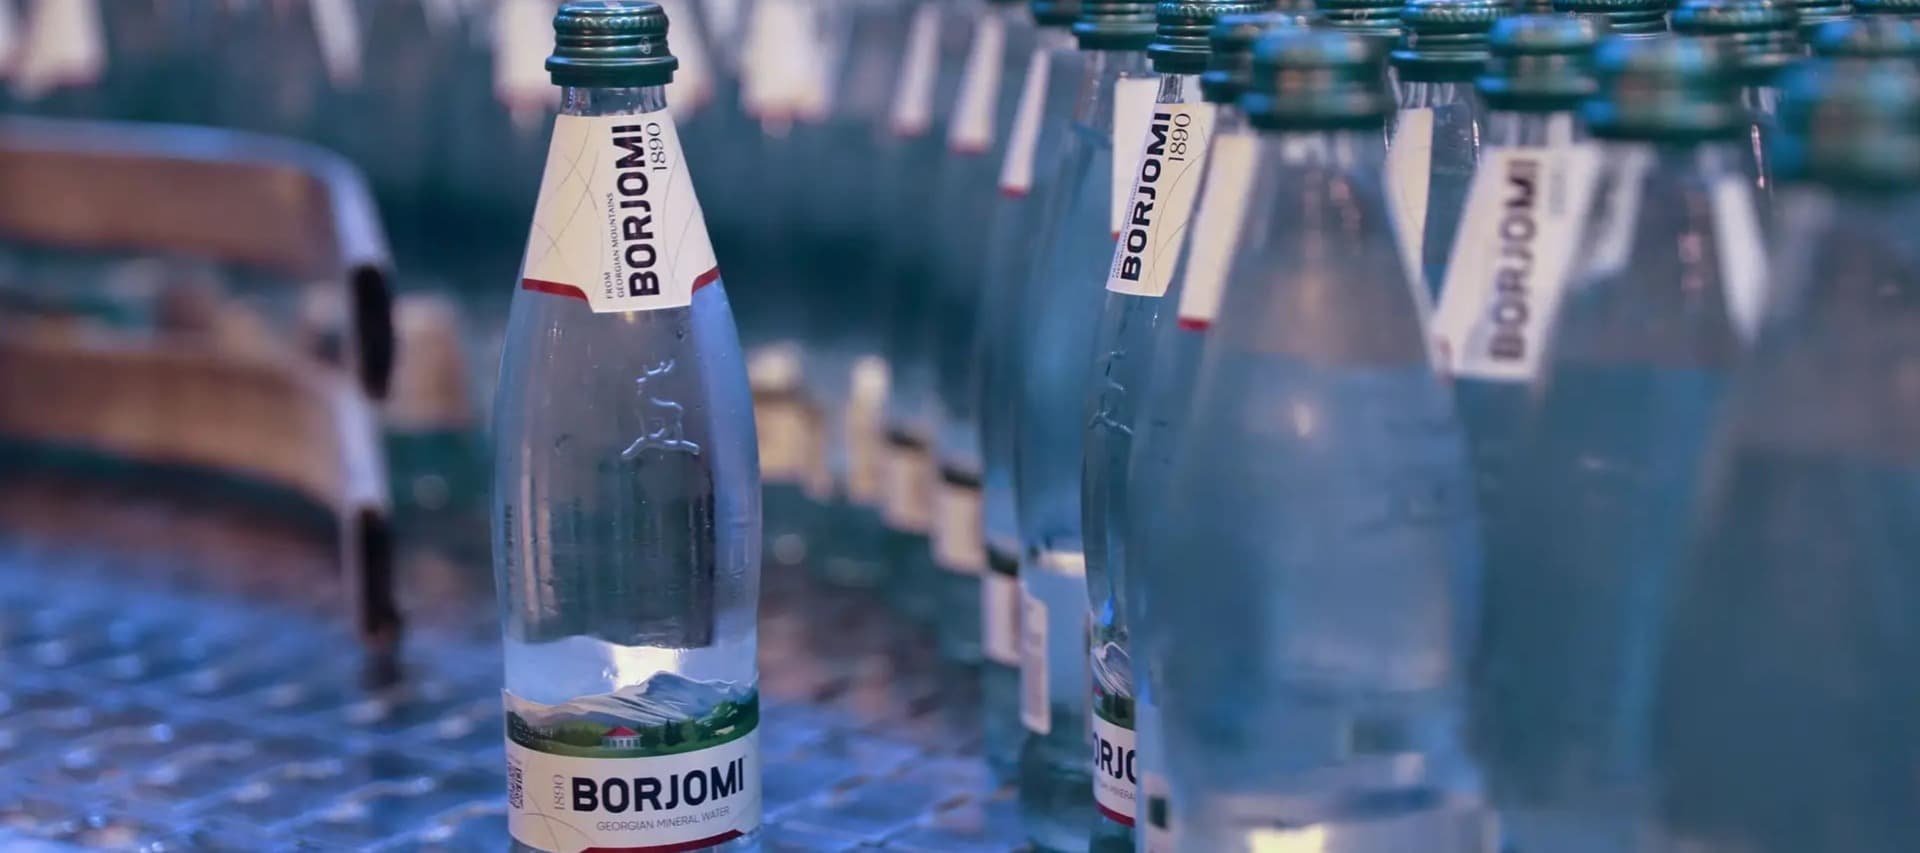 Фото новости: "Производитель
«Боржоми» будет продавать в России лимонады и энергетики"